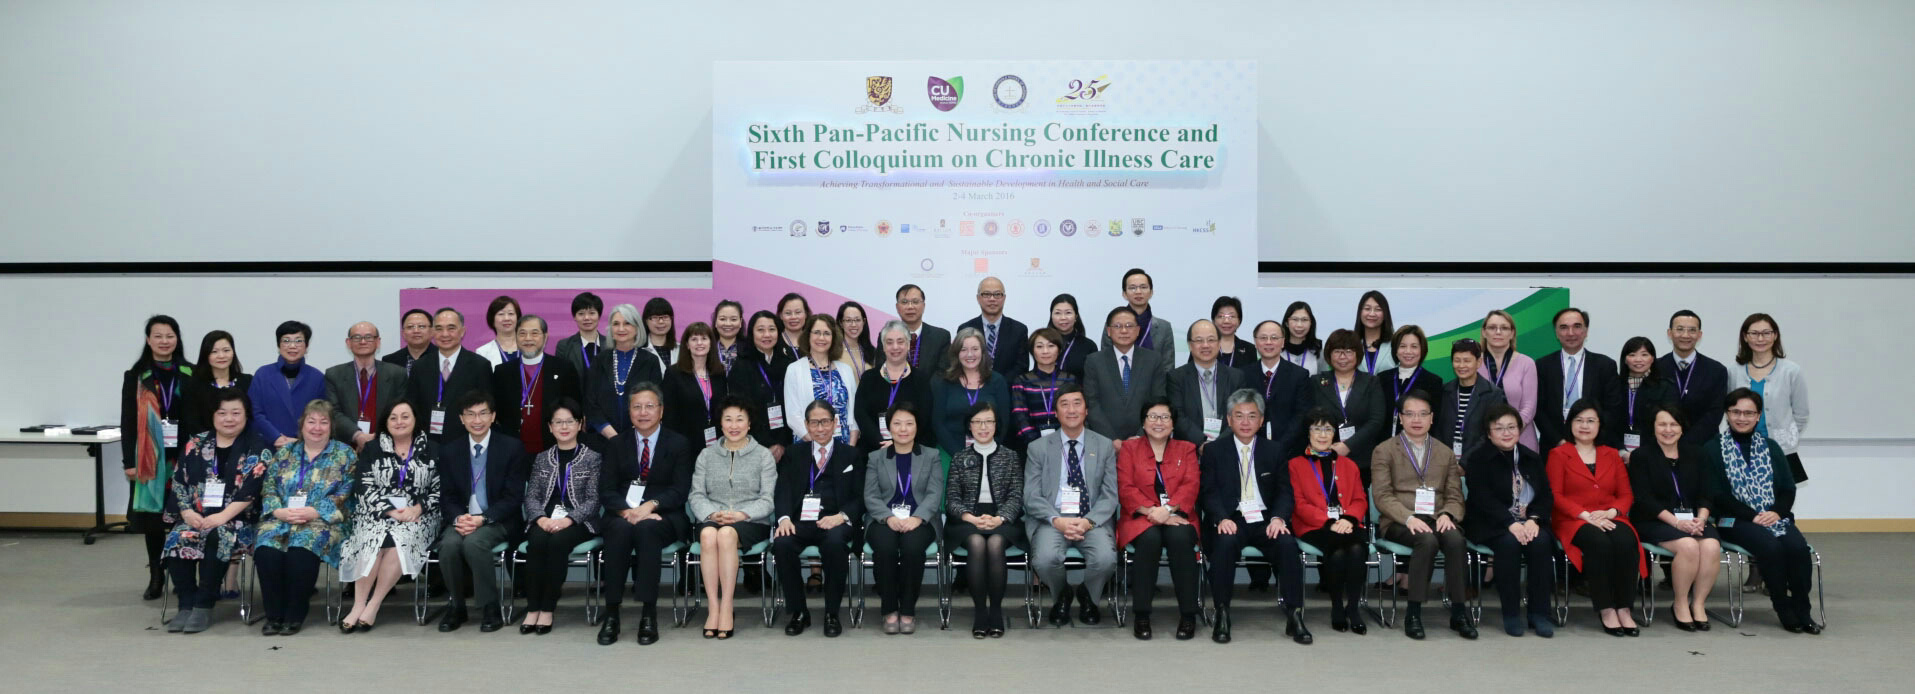 第六届泛太平洋护理会议暨第一届慢性病护理研讨会开幕典礼